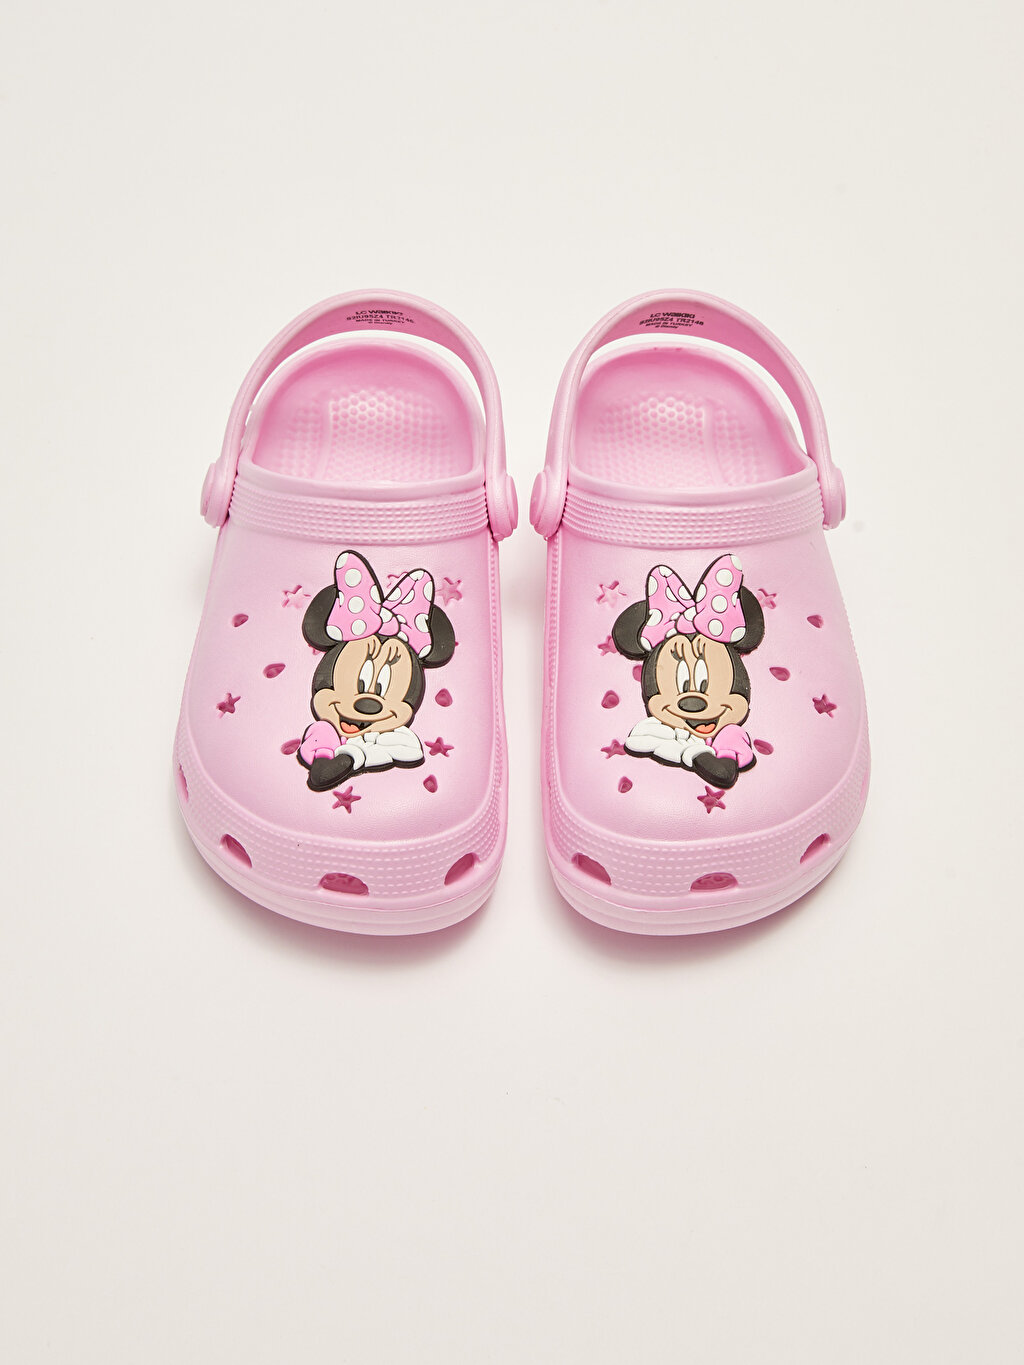 Minnie Mouse Licensed Girls Beach Sandals -S2IU95Z4-CRC - S2IU95Z4-CRC ...